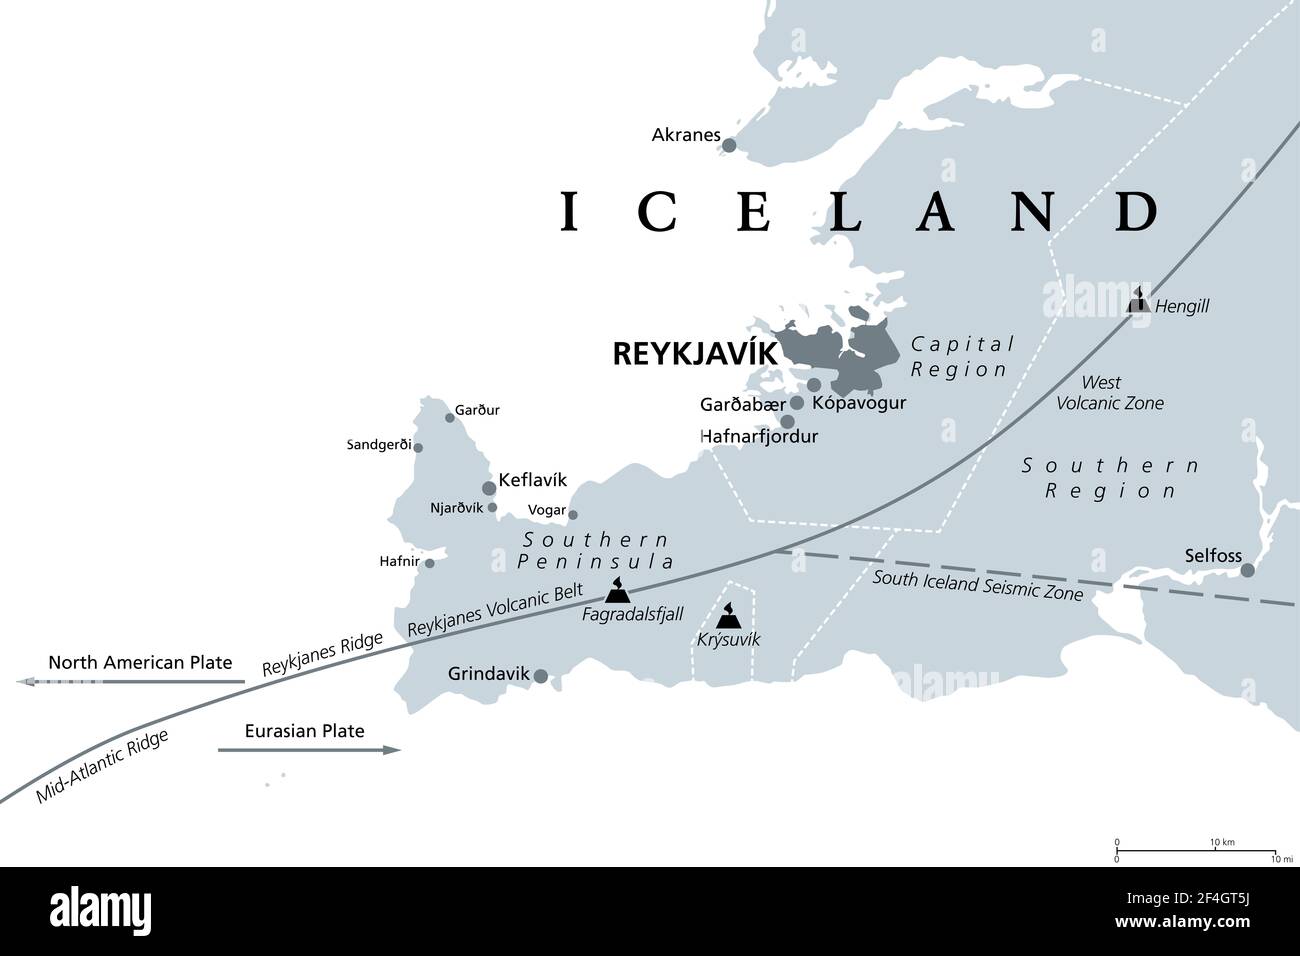 Géologie de la région de la capitale et de la péninsule sud de l'Islande, carte politique grise. Reykjavik et ses environs, avec la péninsule de Reykjanes. Banque D'Images